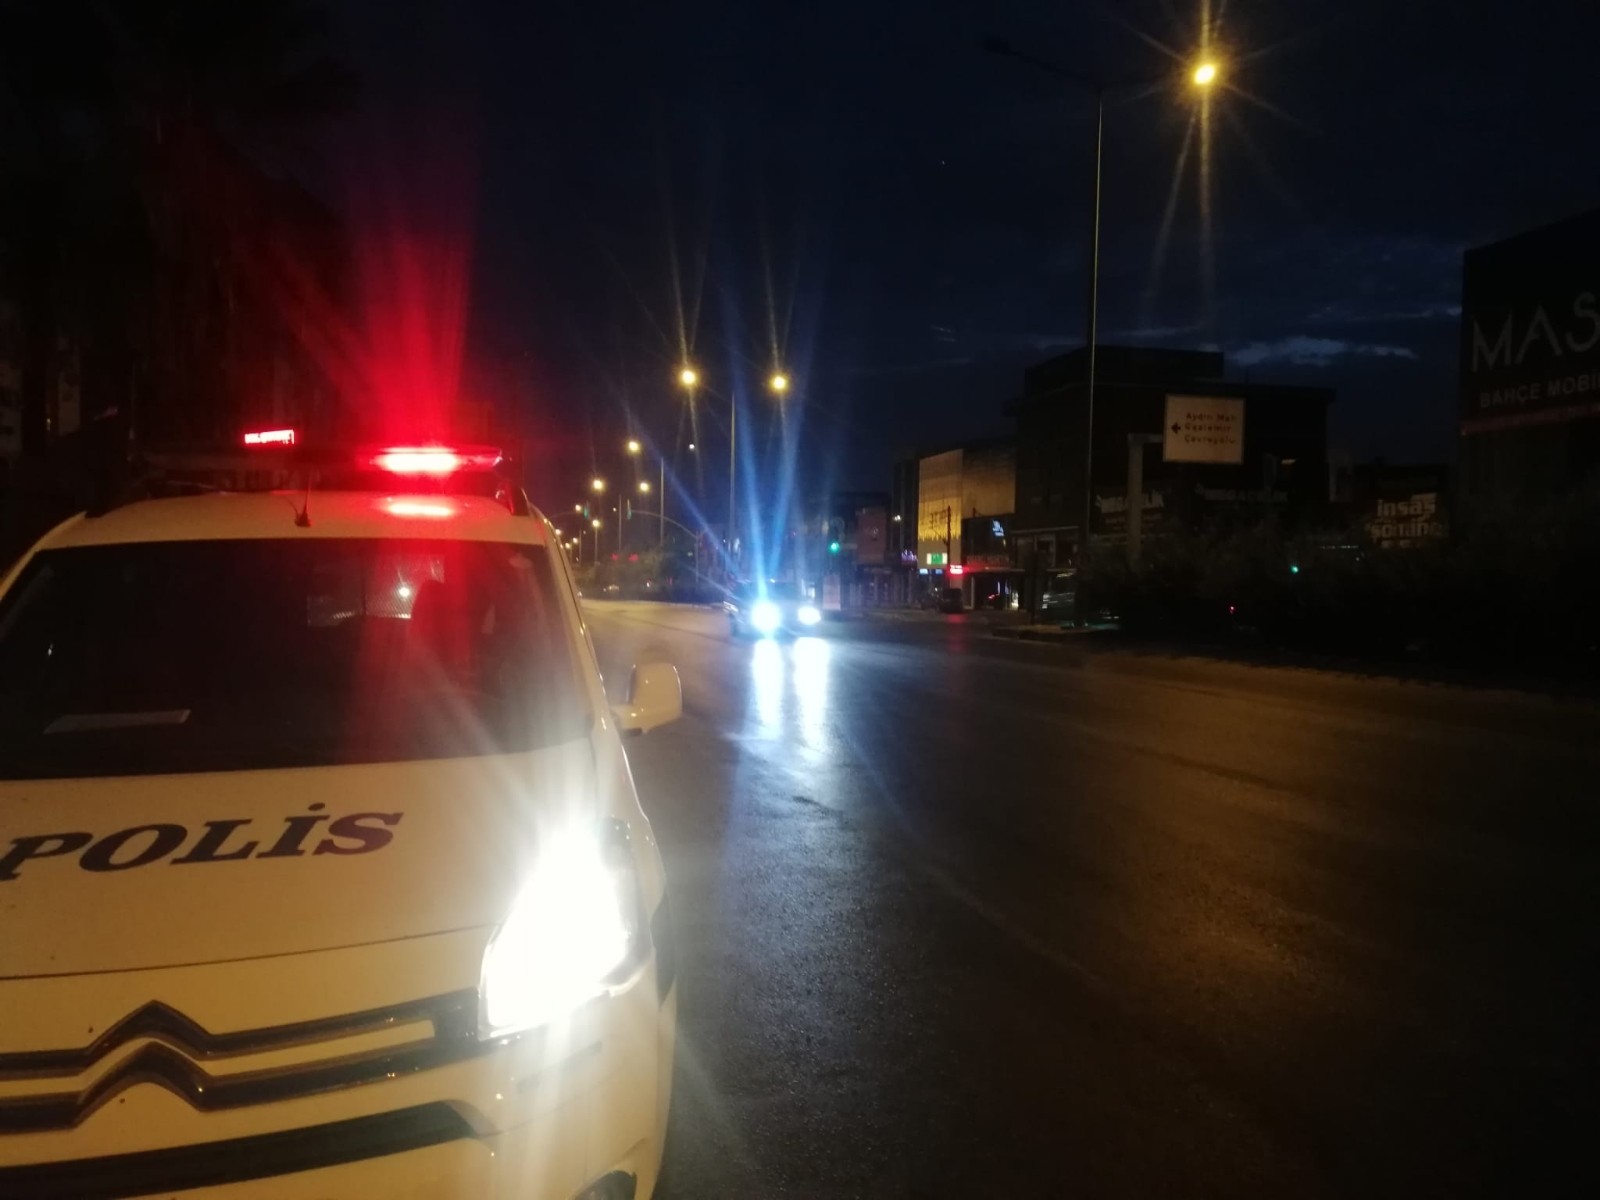 İzmir’de otomobilin çarptığı kişi yaşamını yitirdi